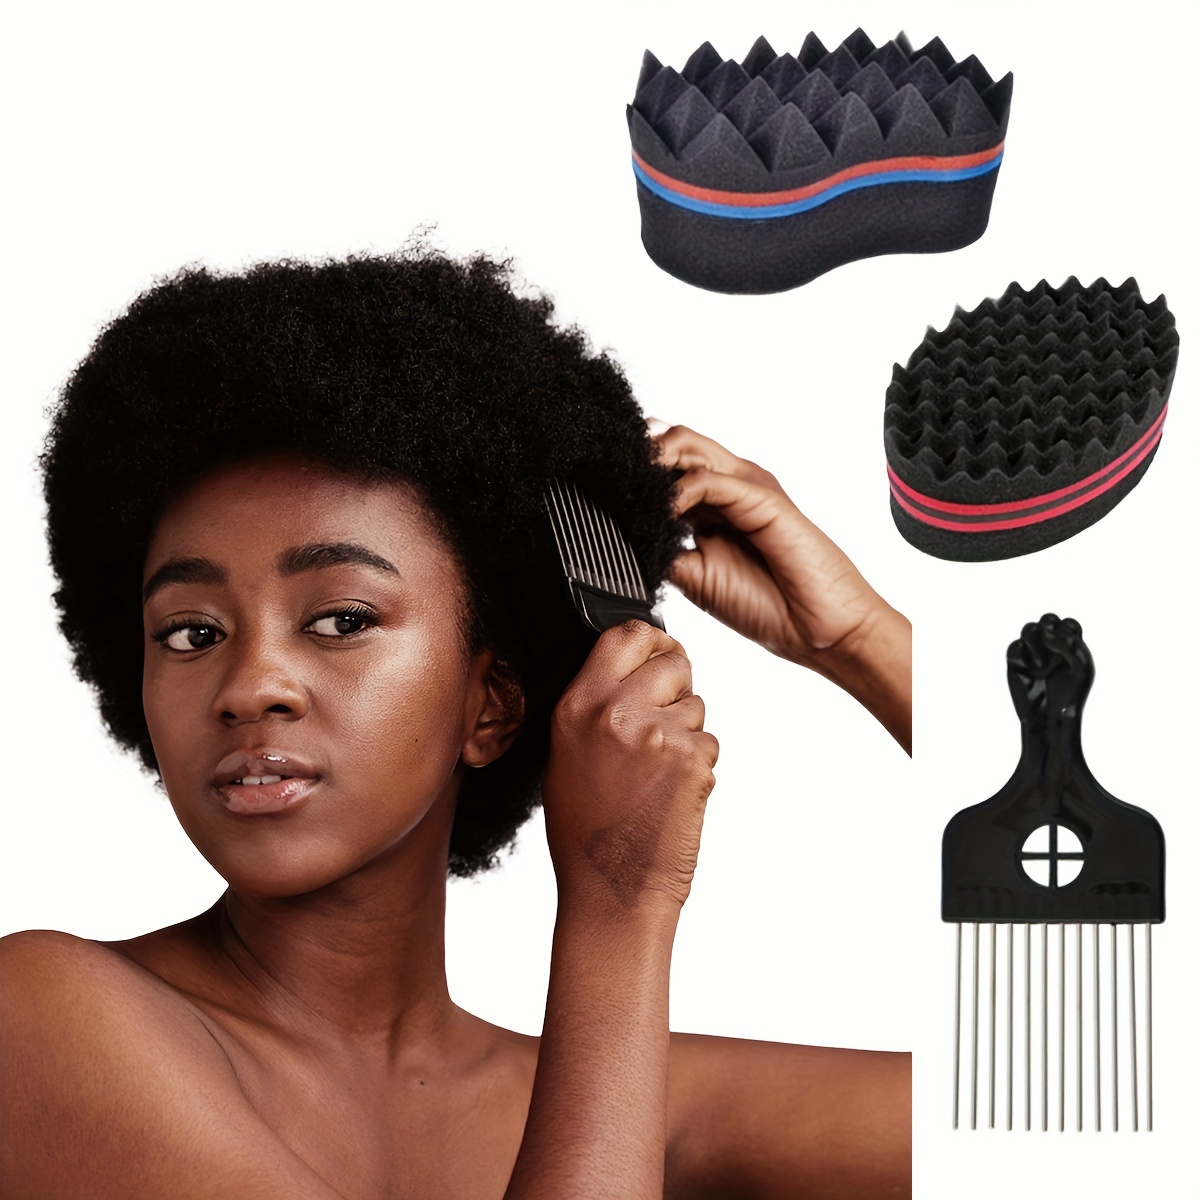 Éponge cheveux twist/Peigne/Gants - Kit Afro Twist